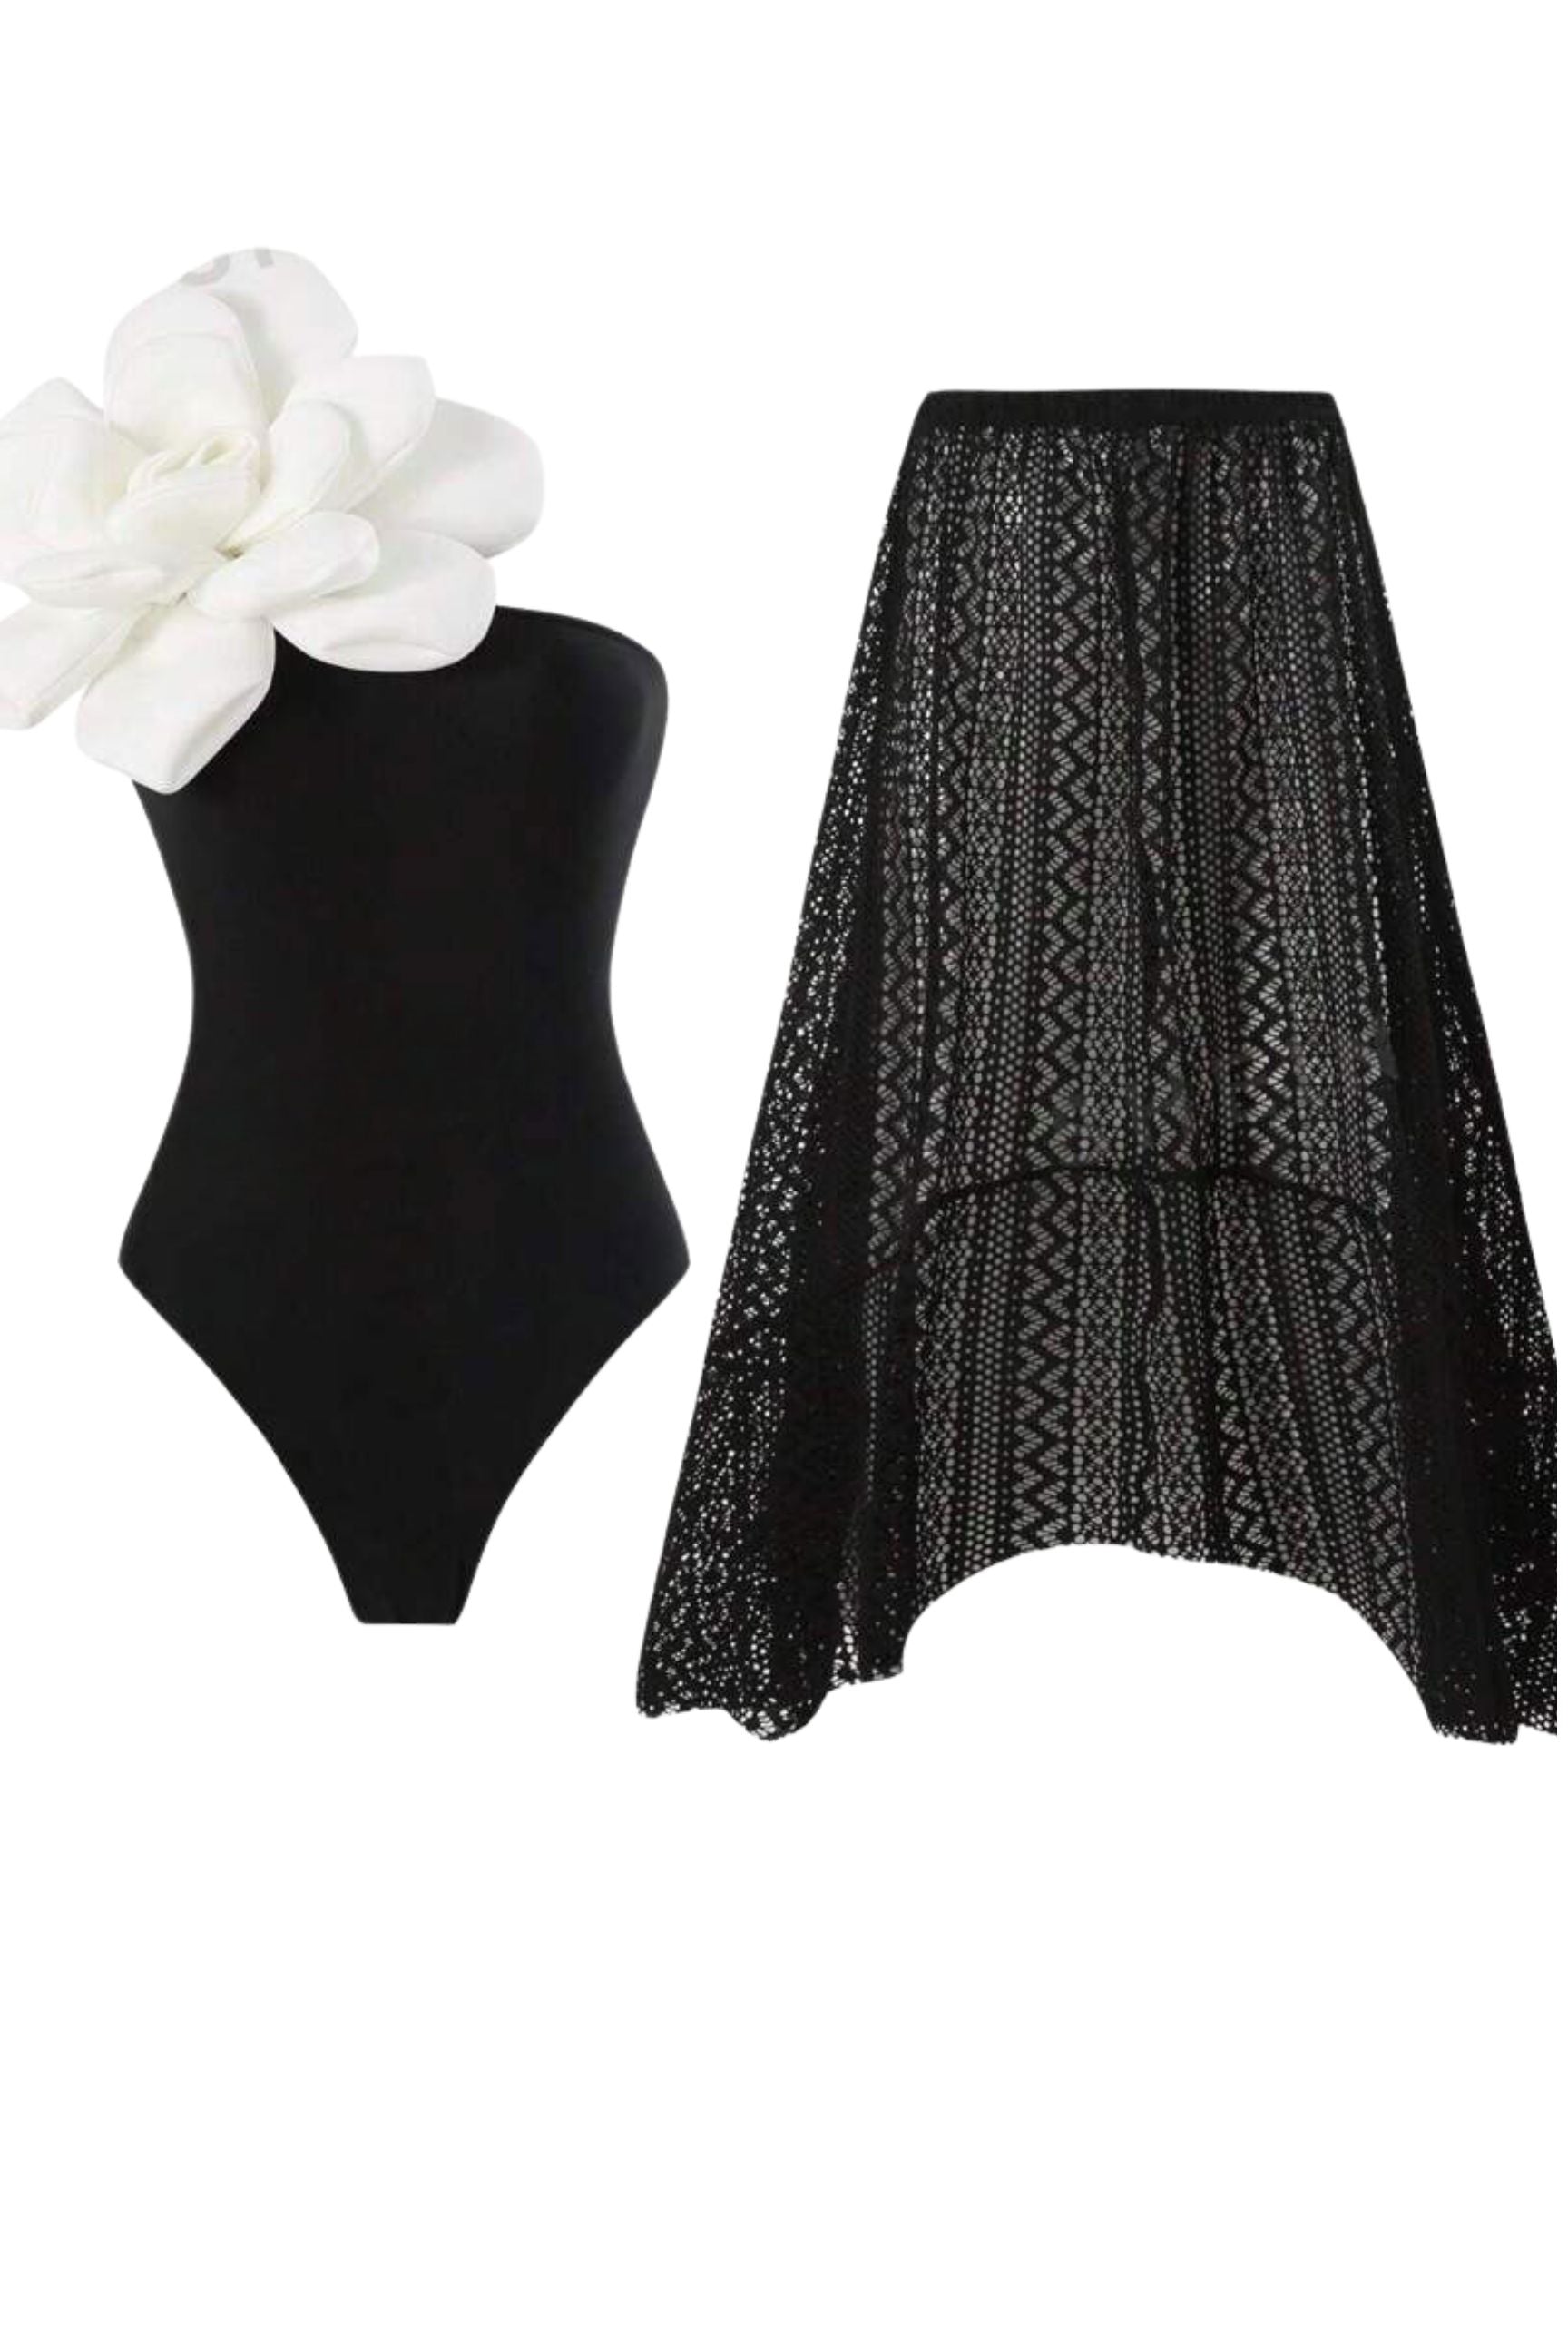 Fiora Flower Detail Swimsuit w/ Skirt Set